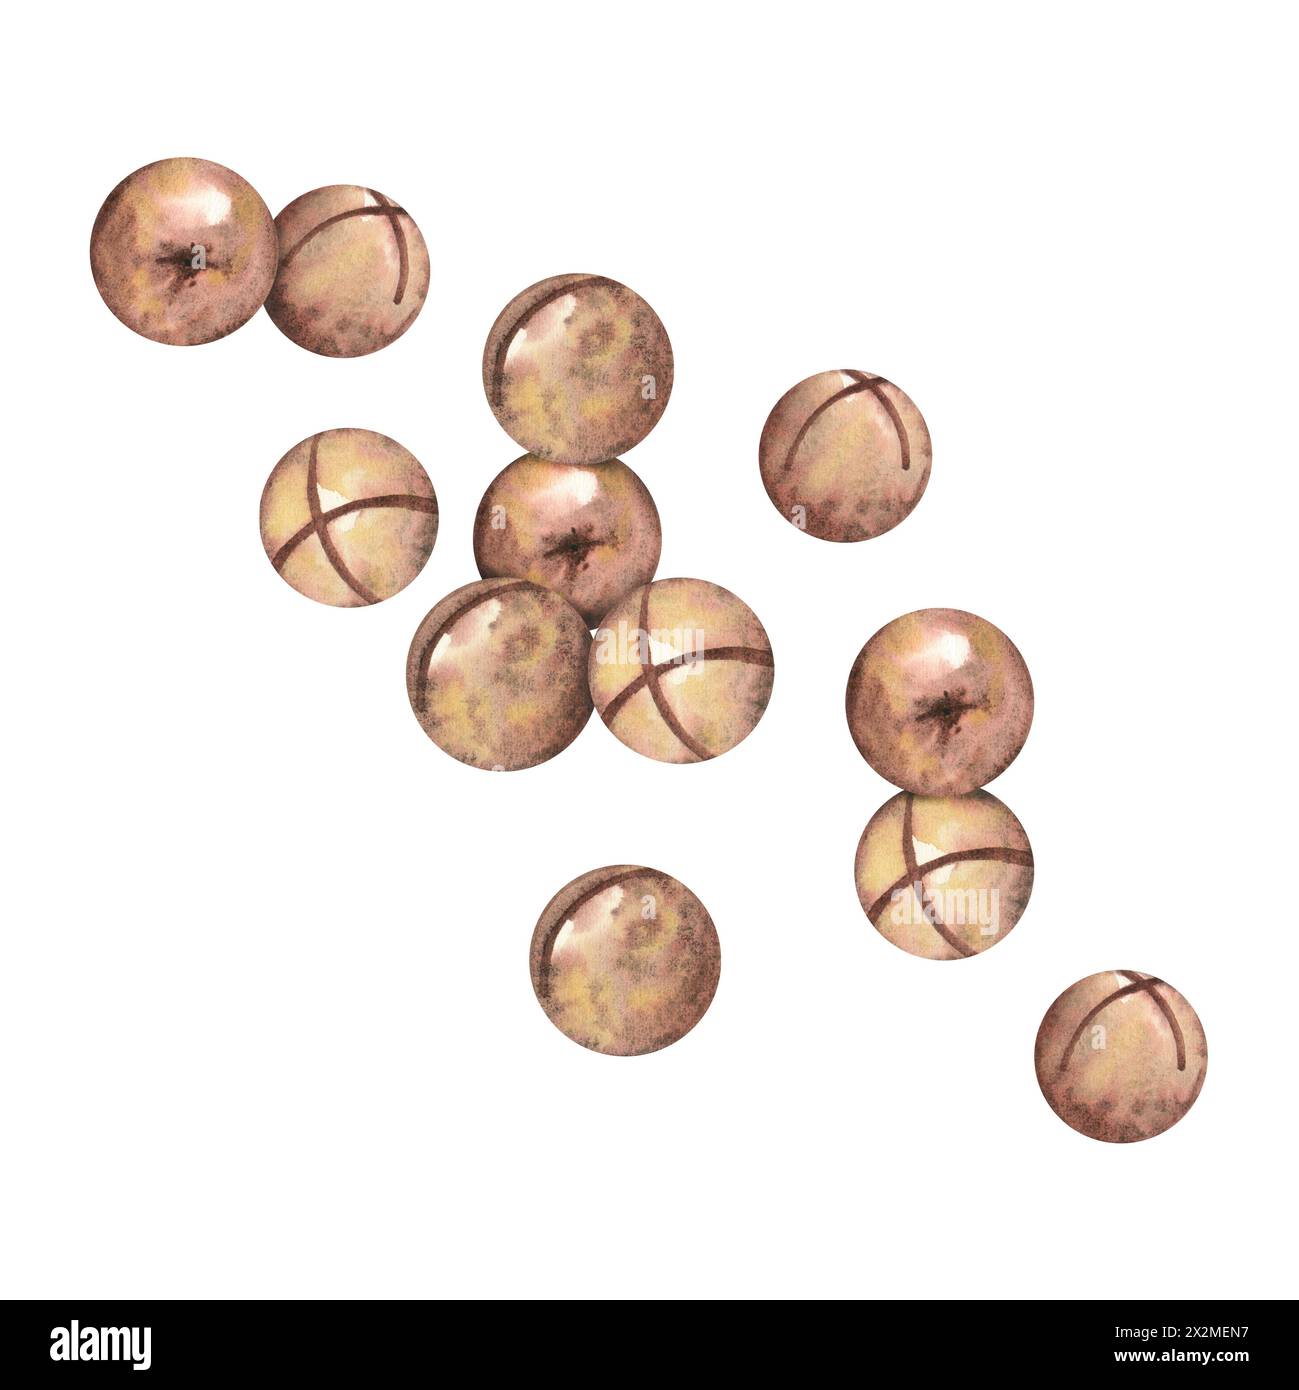 Noix de macadamia sur fond blanc, une composition de plusieurs noix. Le macadamia. Nourriture, collations, noix brune, gros plan. Illustrations aquarelles Banque D'Images